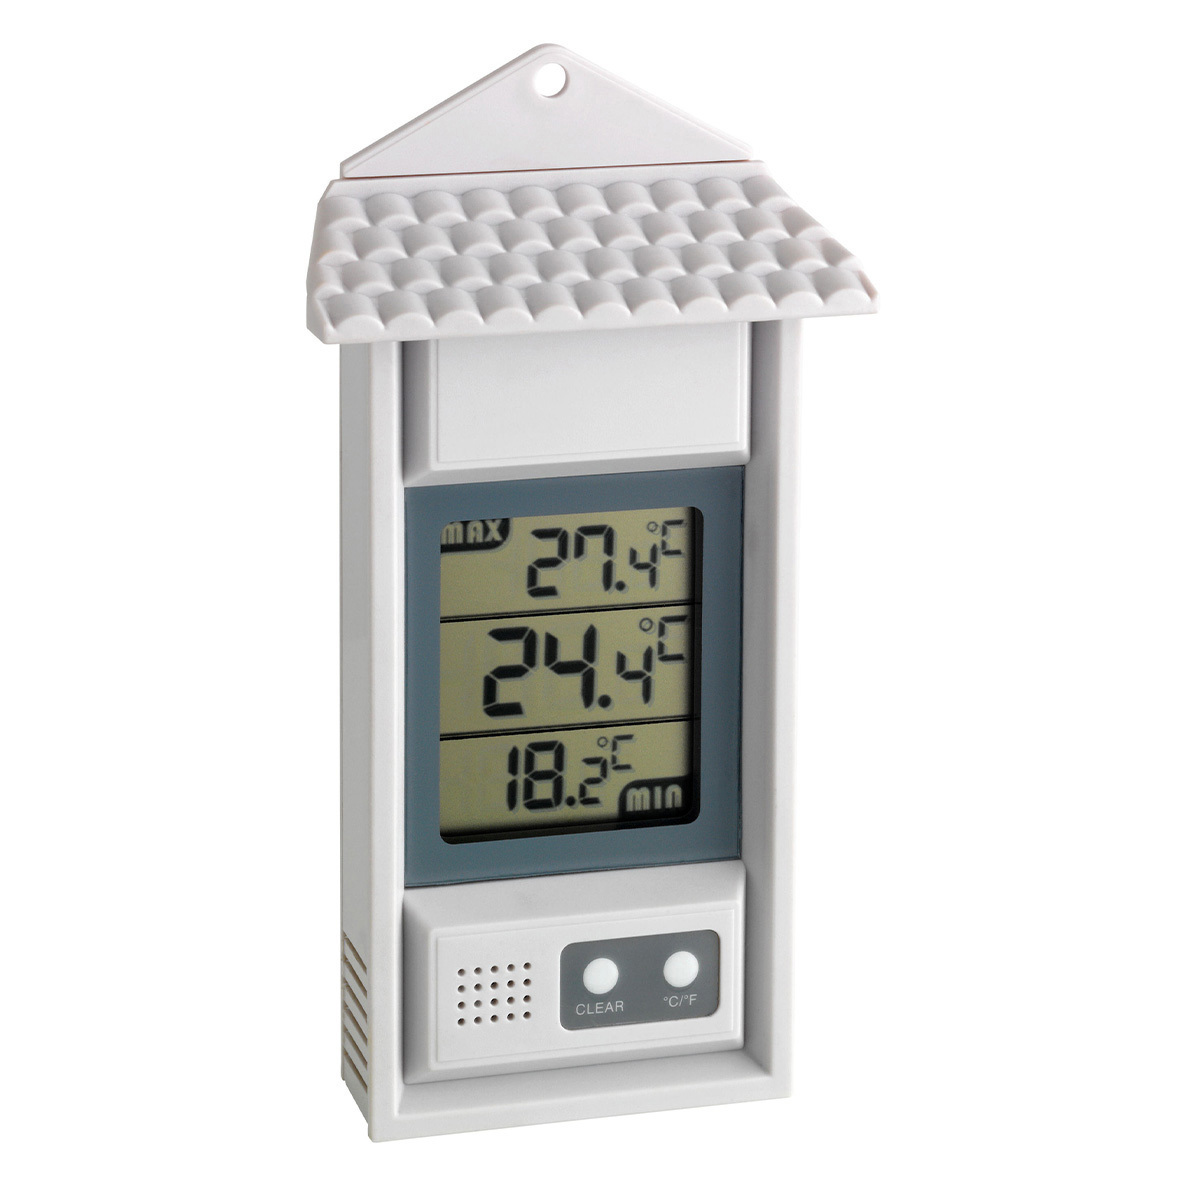 30-1039-digitales-thermometer-innen-aussen-1200x1200px.jpg